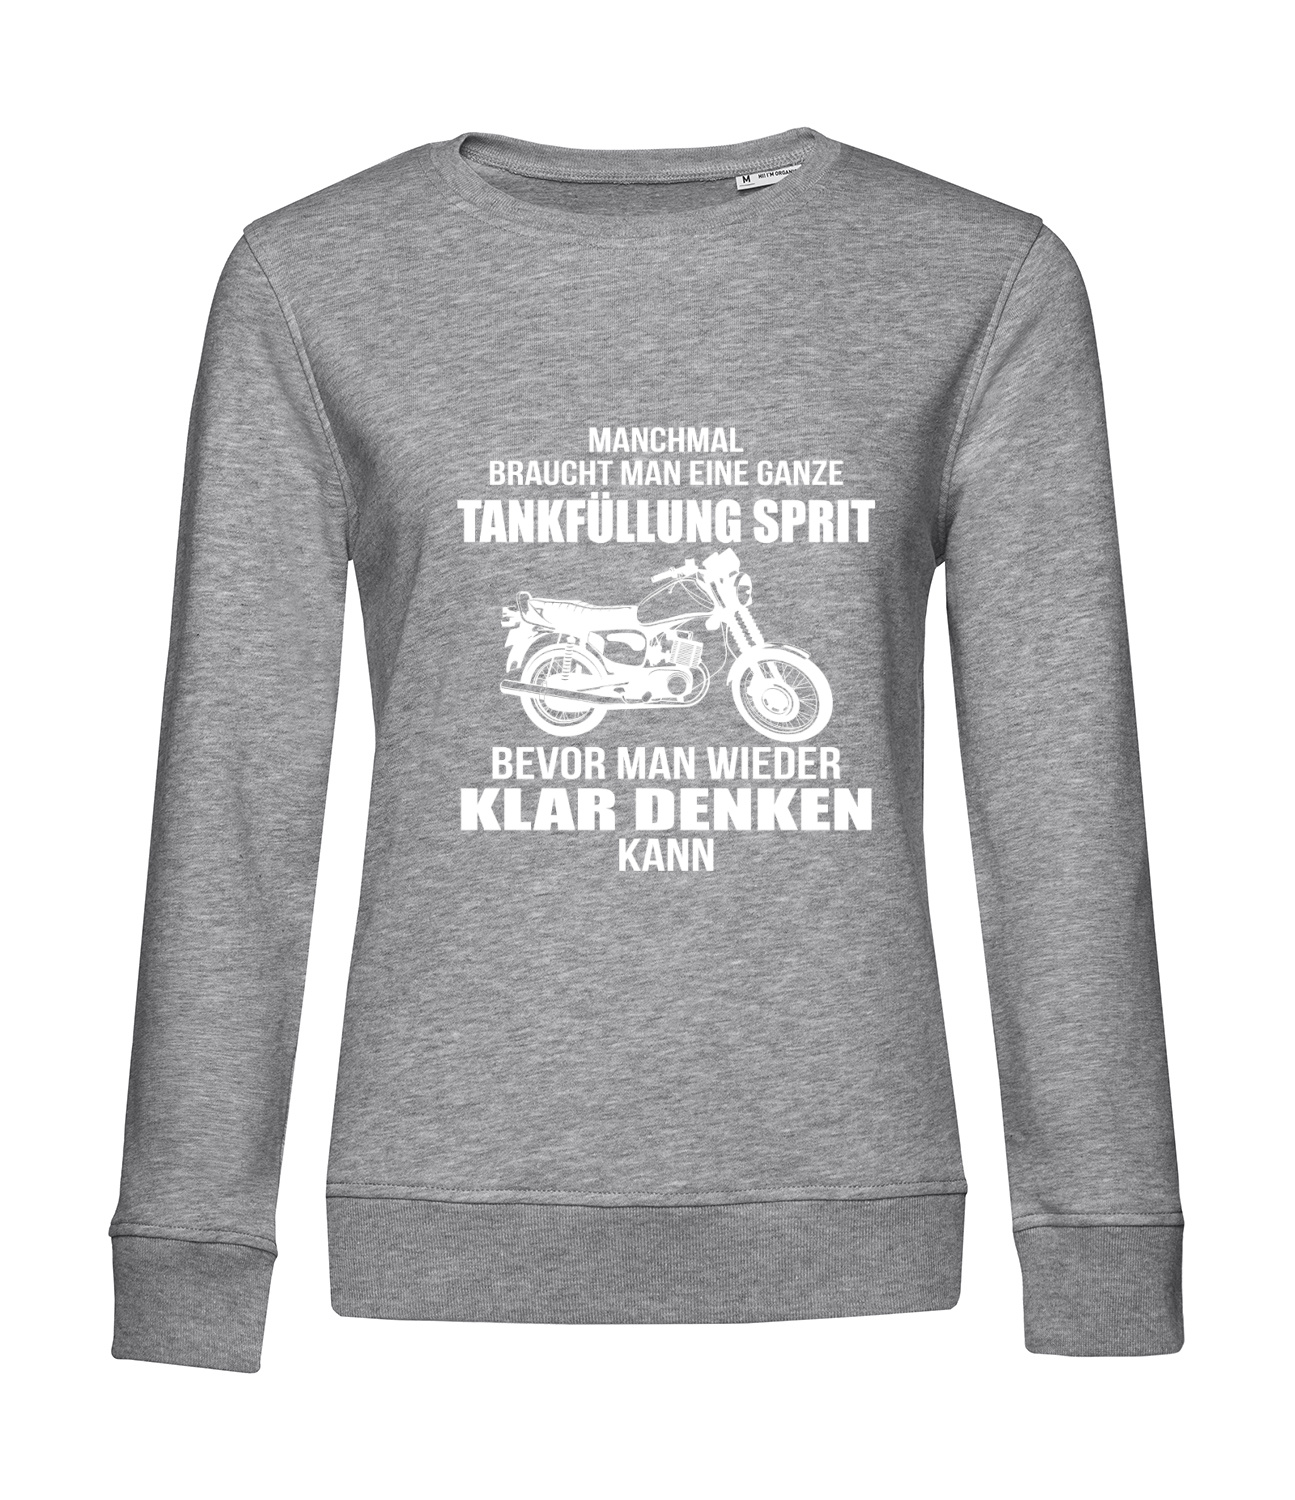 Nachhaltiges Sweatshirt Damen 2Takt - Ganze Tankfüllung